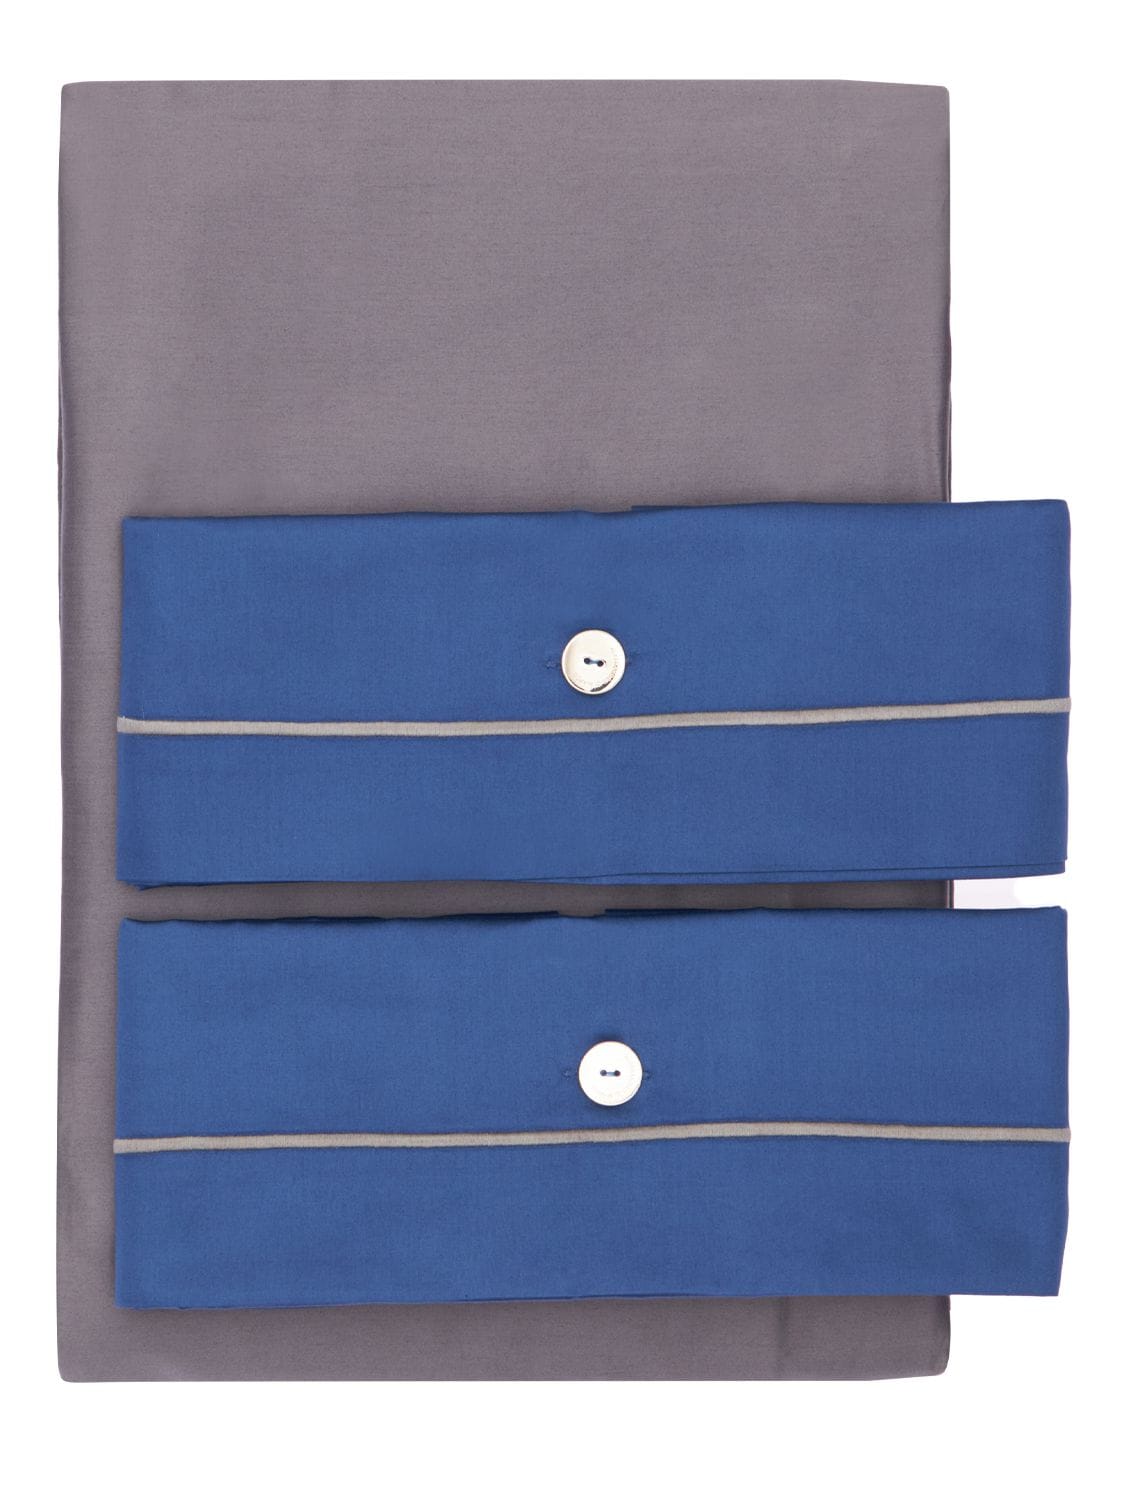 Alessandro Di Marco 棉缎被罩套装 In Blue,grey